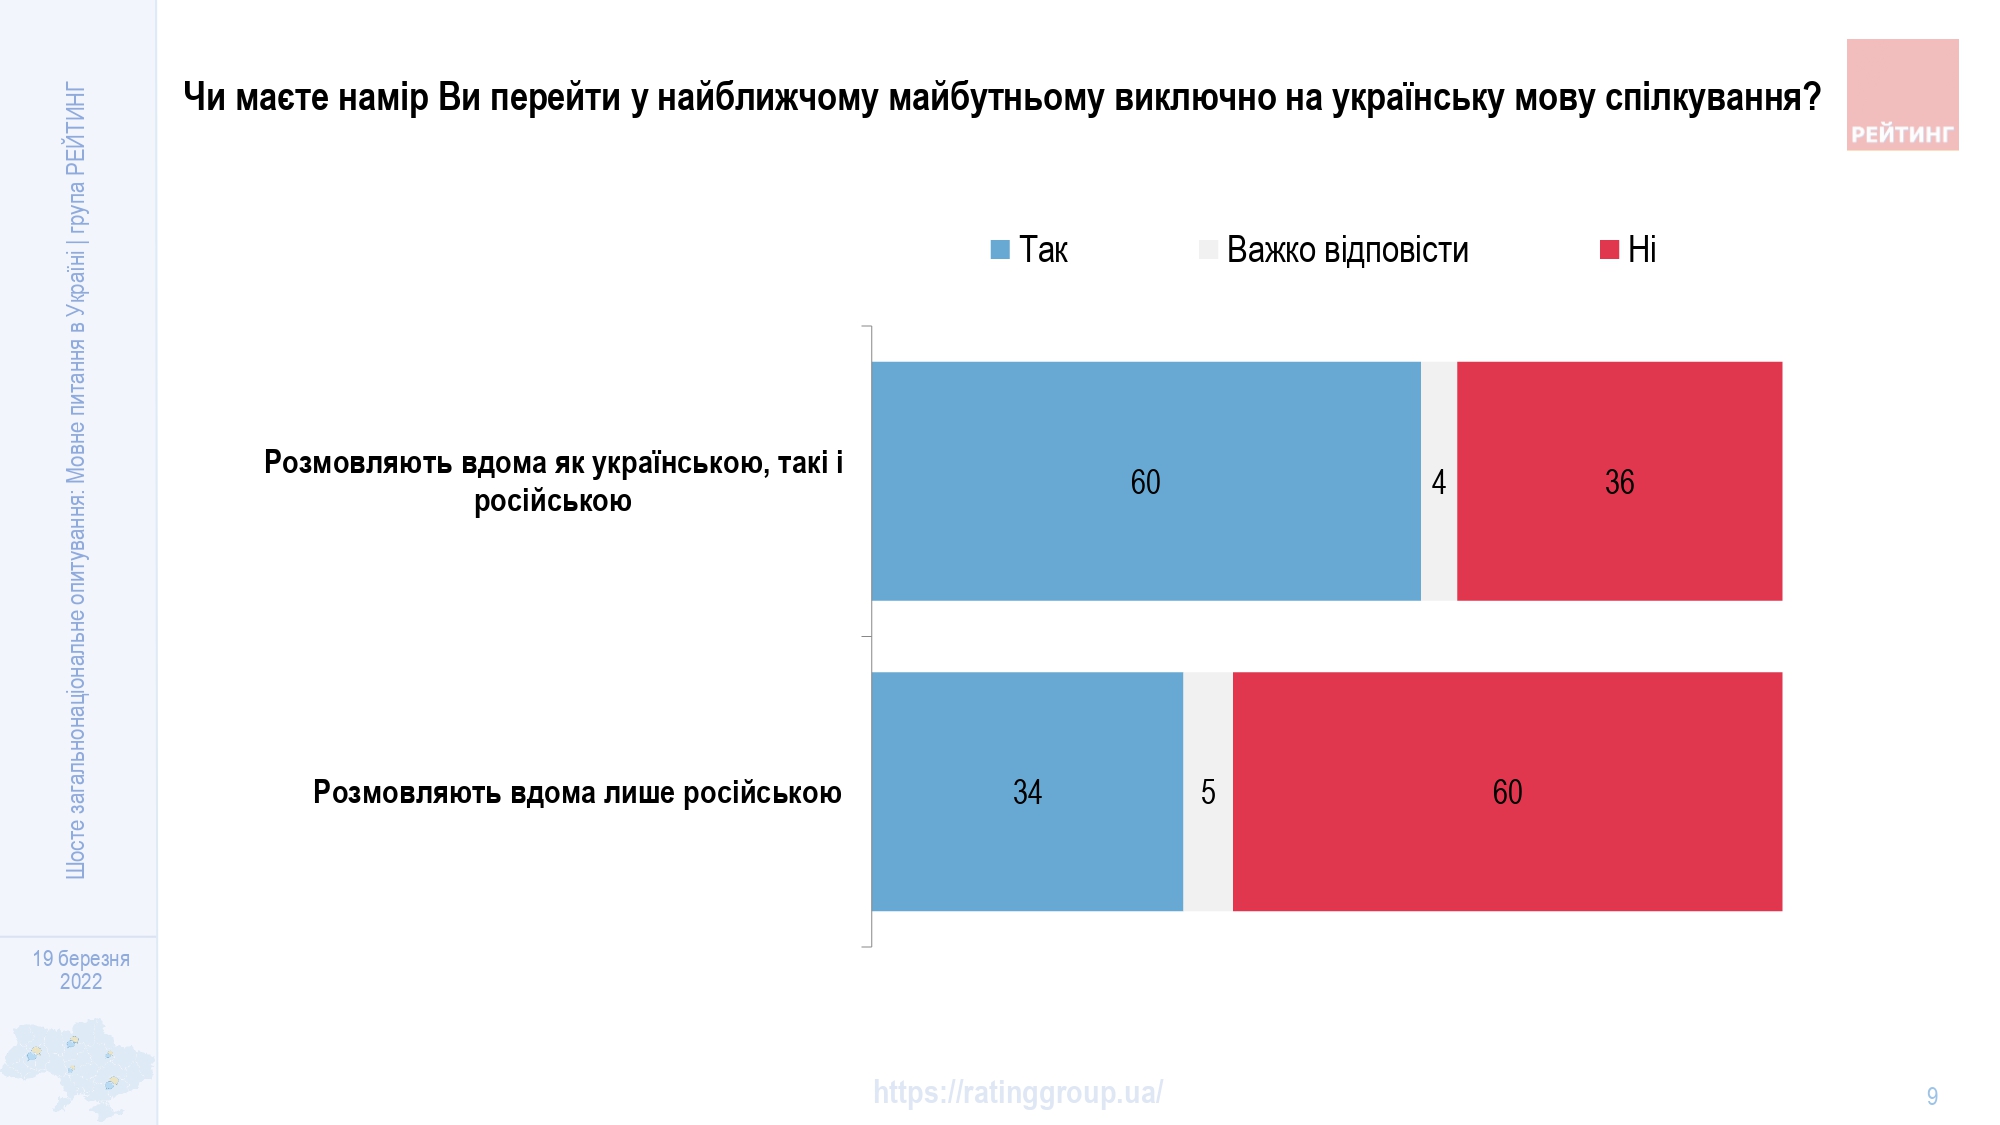 Две трети граждан считают украинский язык родным